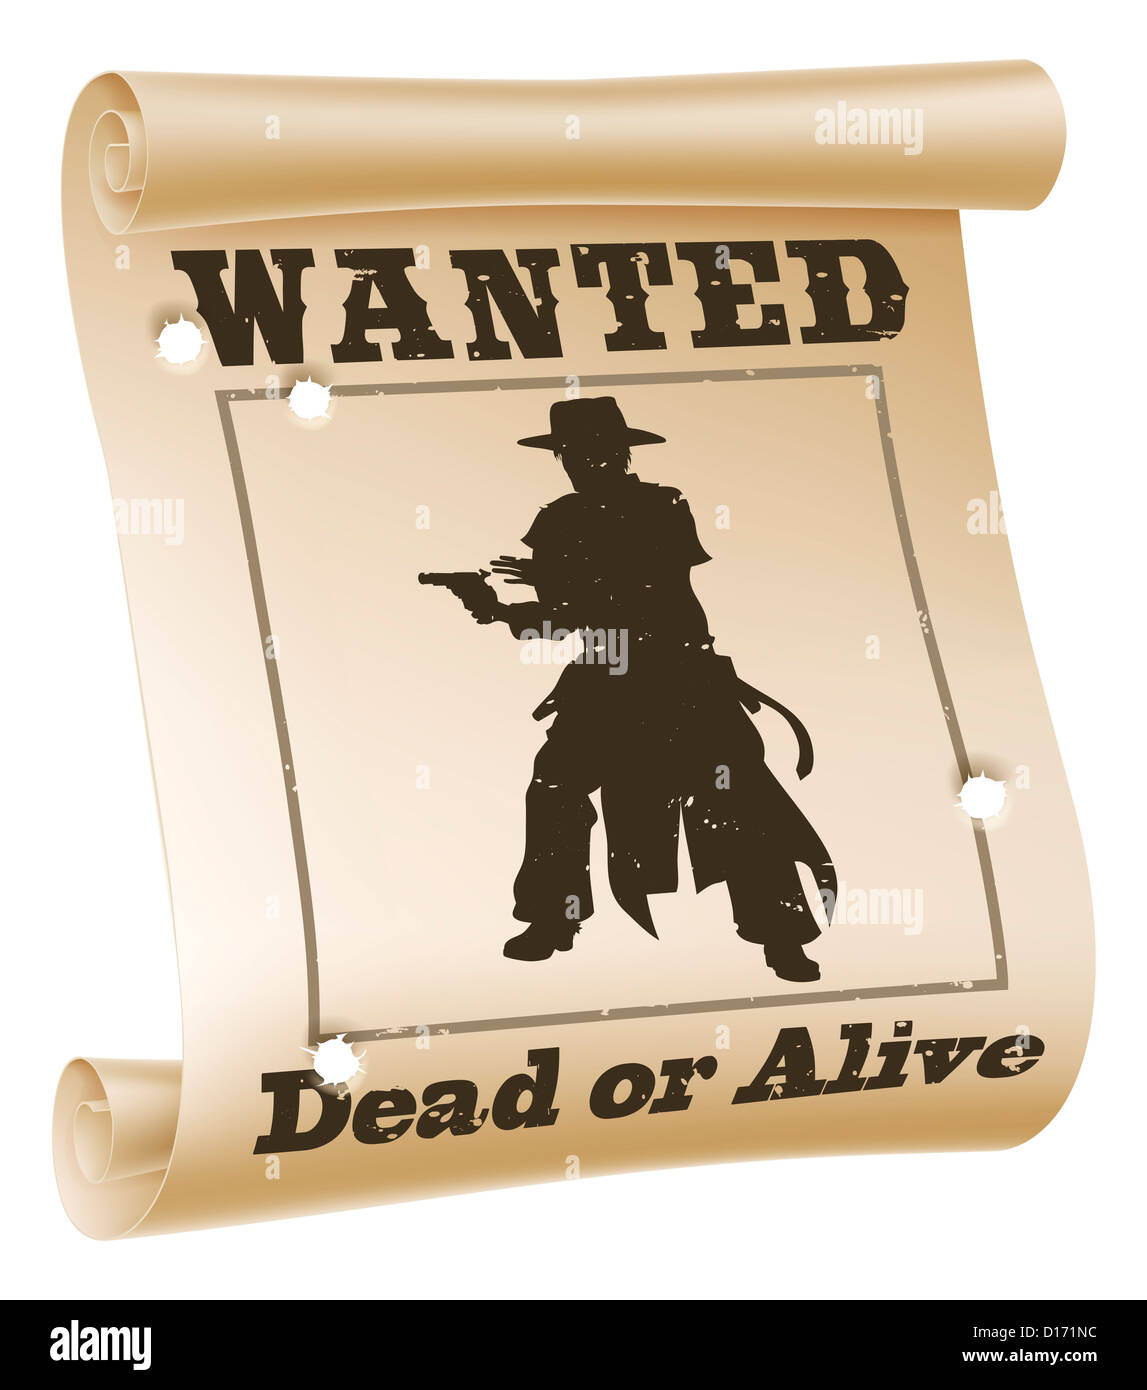 Une illustration d'un avis de recherche avec le texte "wanted Dead or Alive", silhouette de cow-boy et trous de balle Banque D'Images